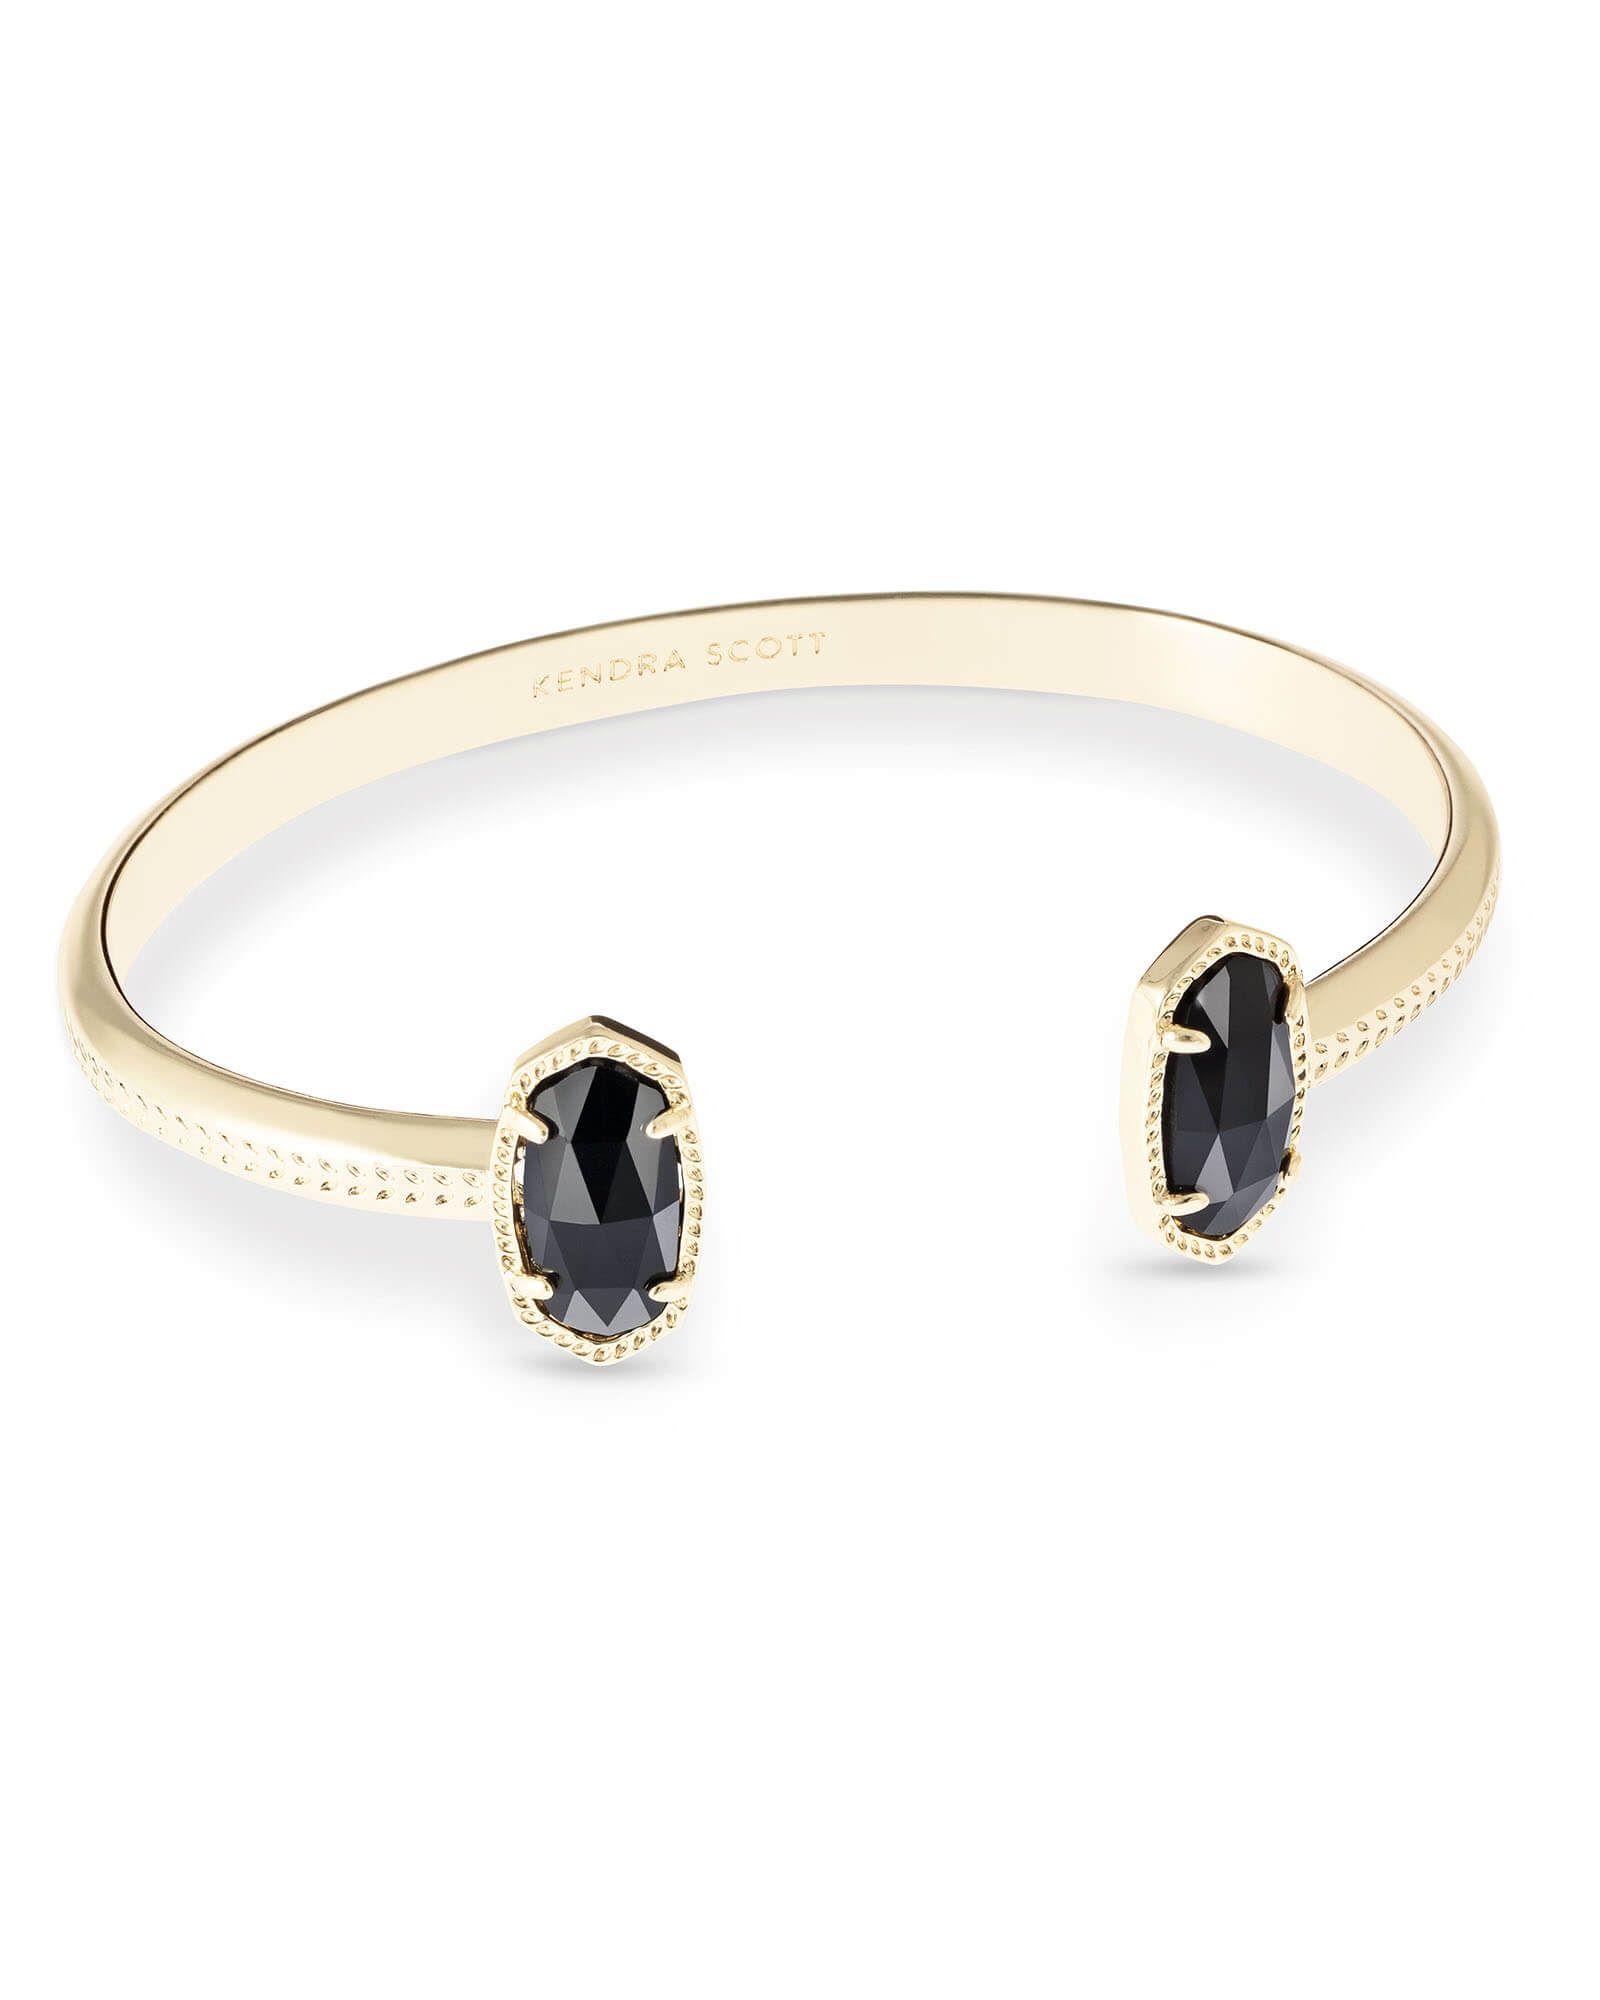 Elton Gold Cuff Bracelet in Black Opaque Glass | Kendra Scott | Kendra Scott